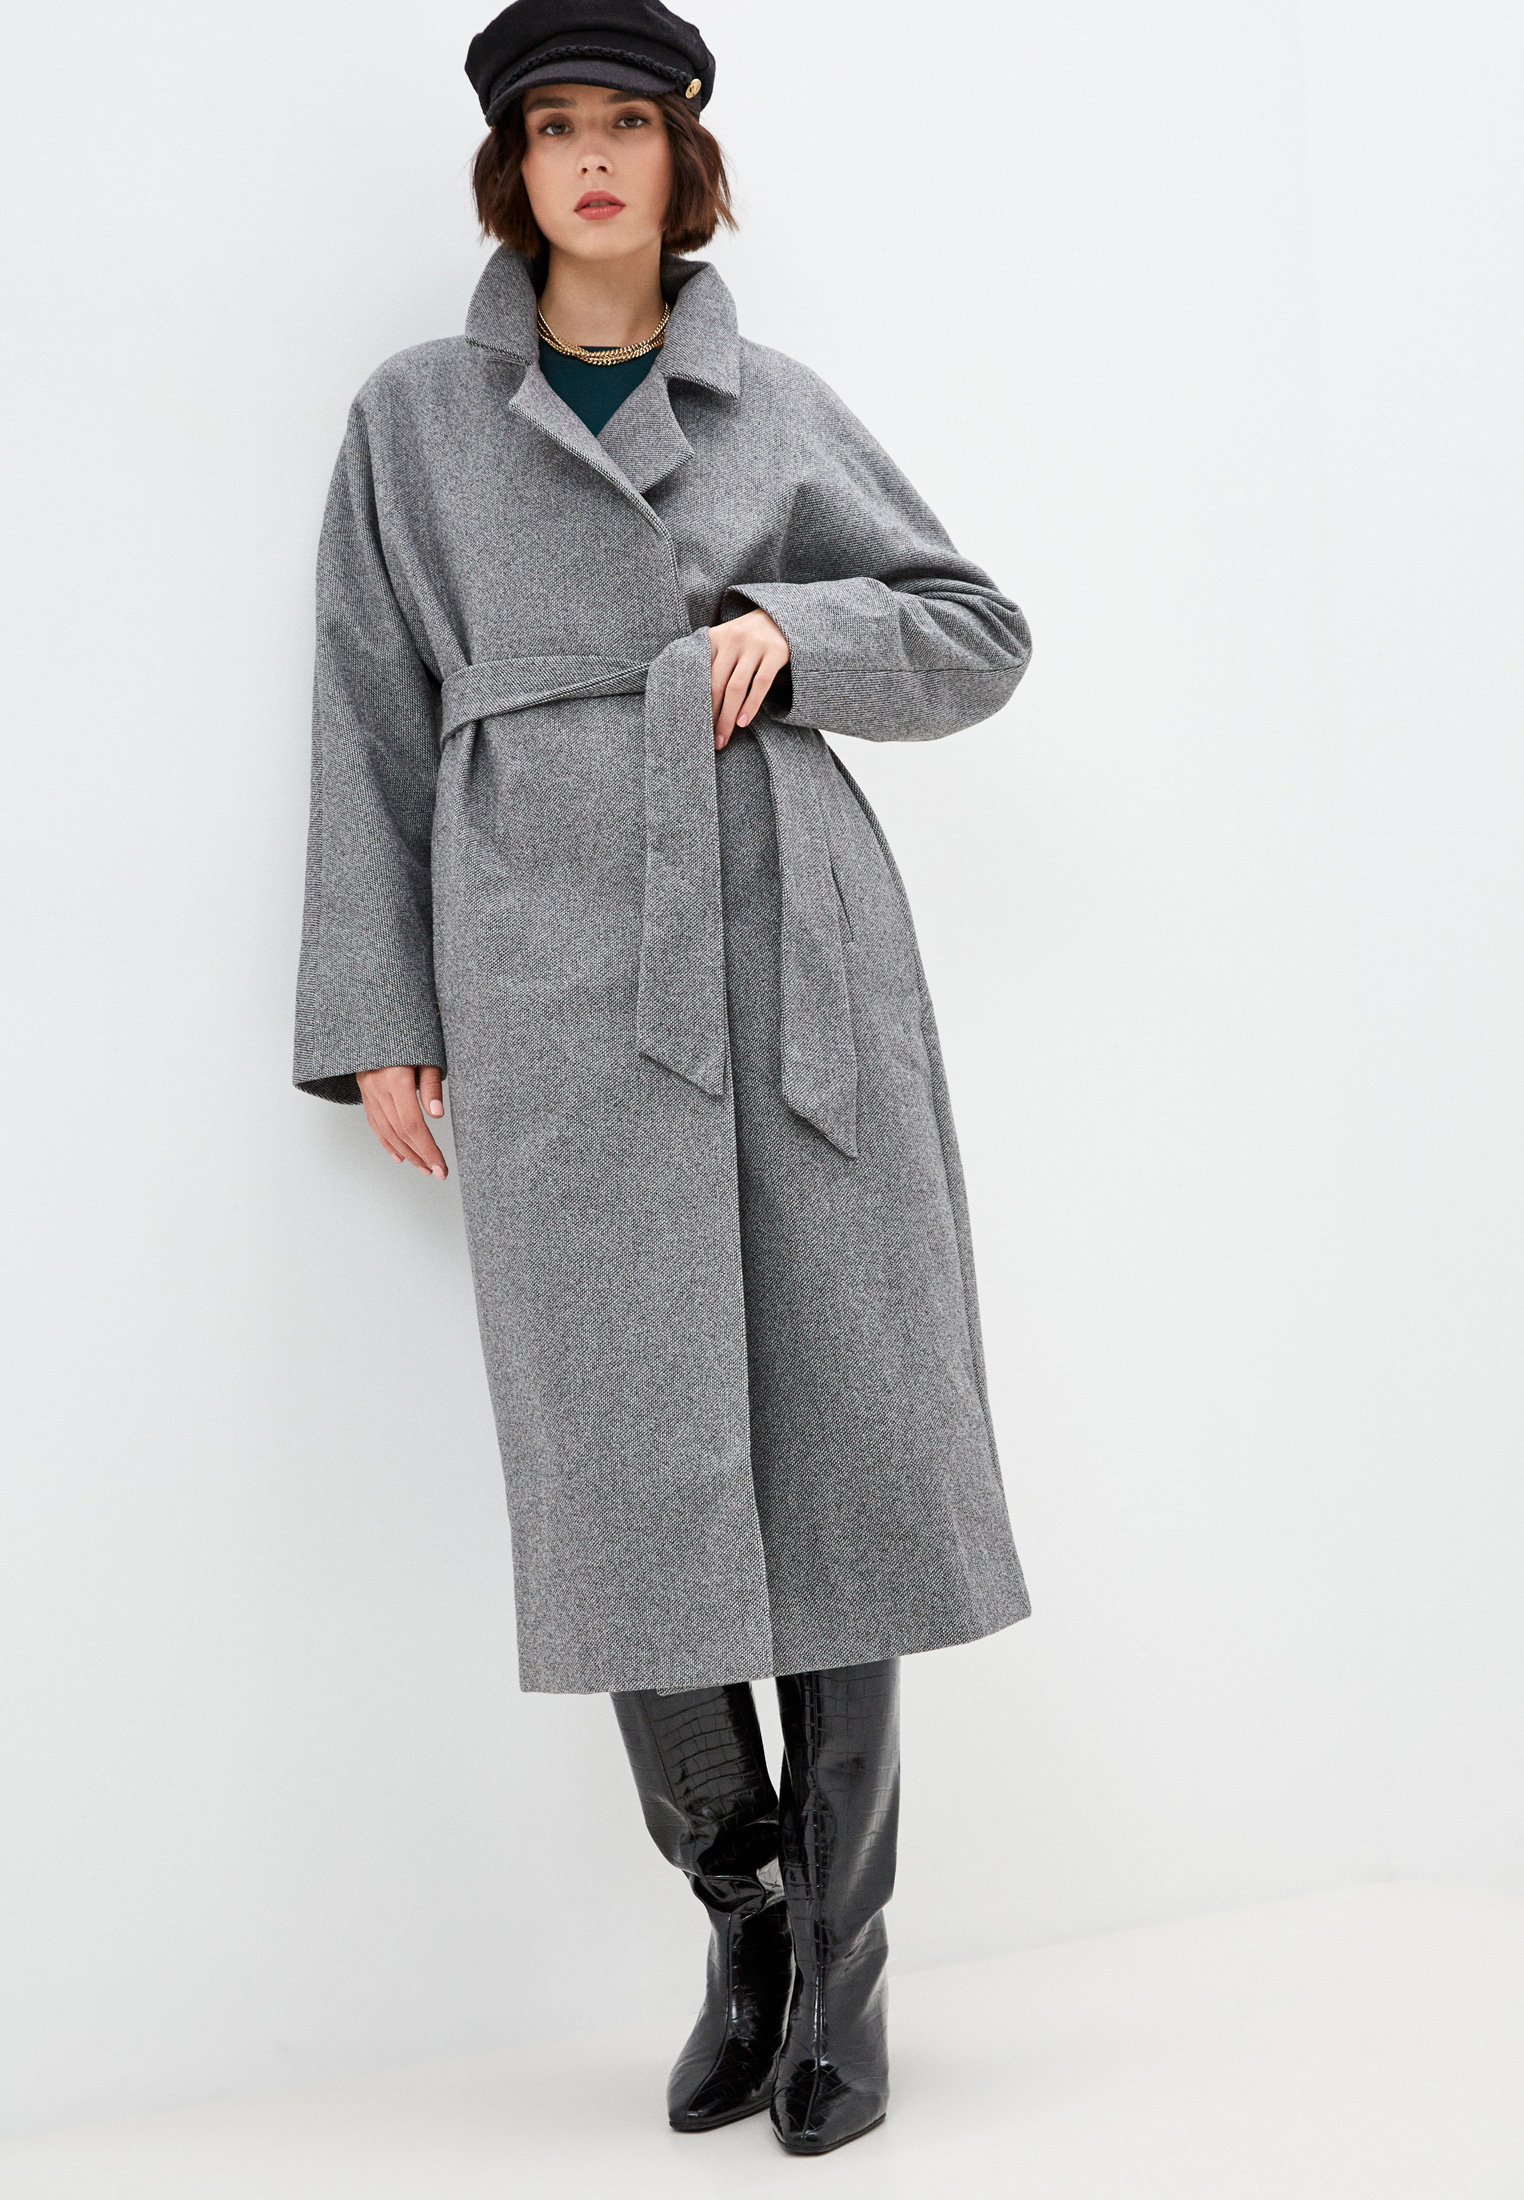 Пальто Vittoria Vicci, цвет: серый, MP002XW09KW1 — купить в интернет-магазине Lamoda